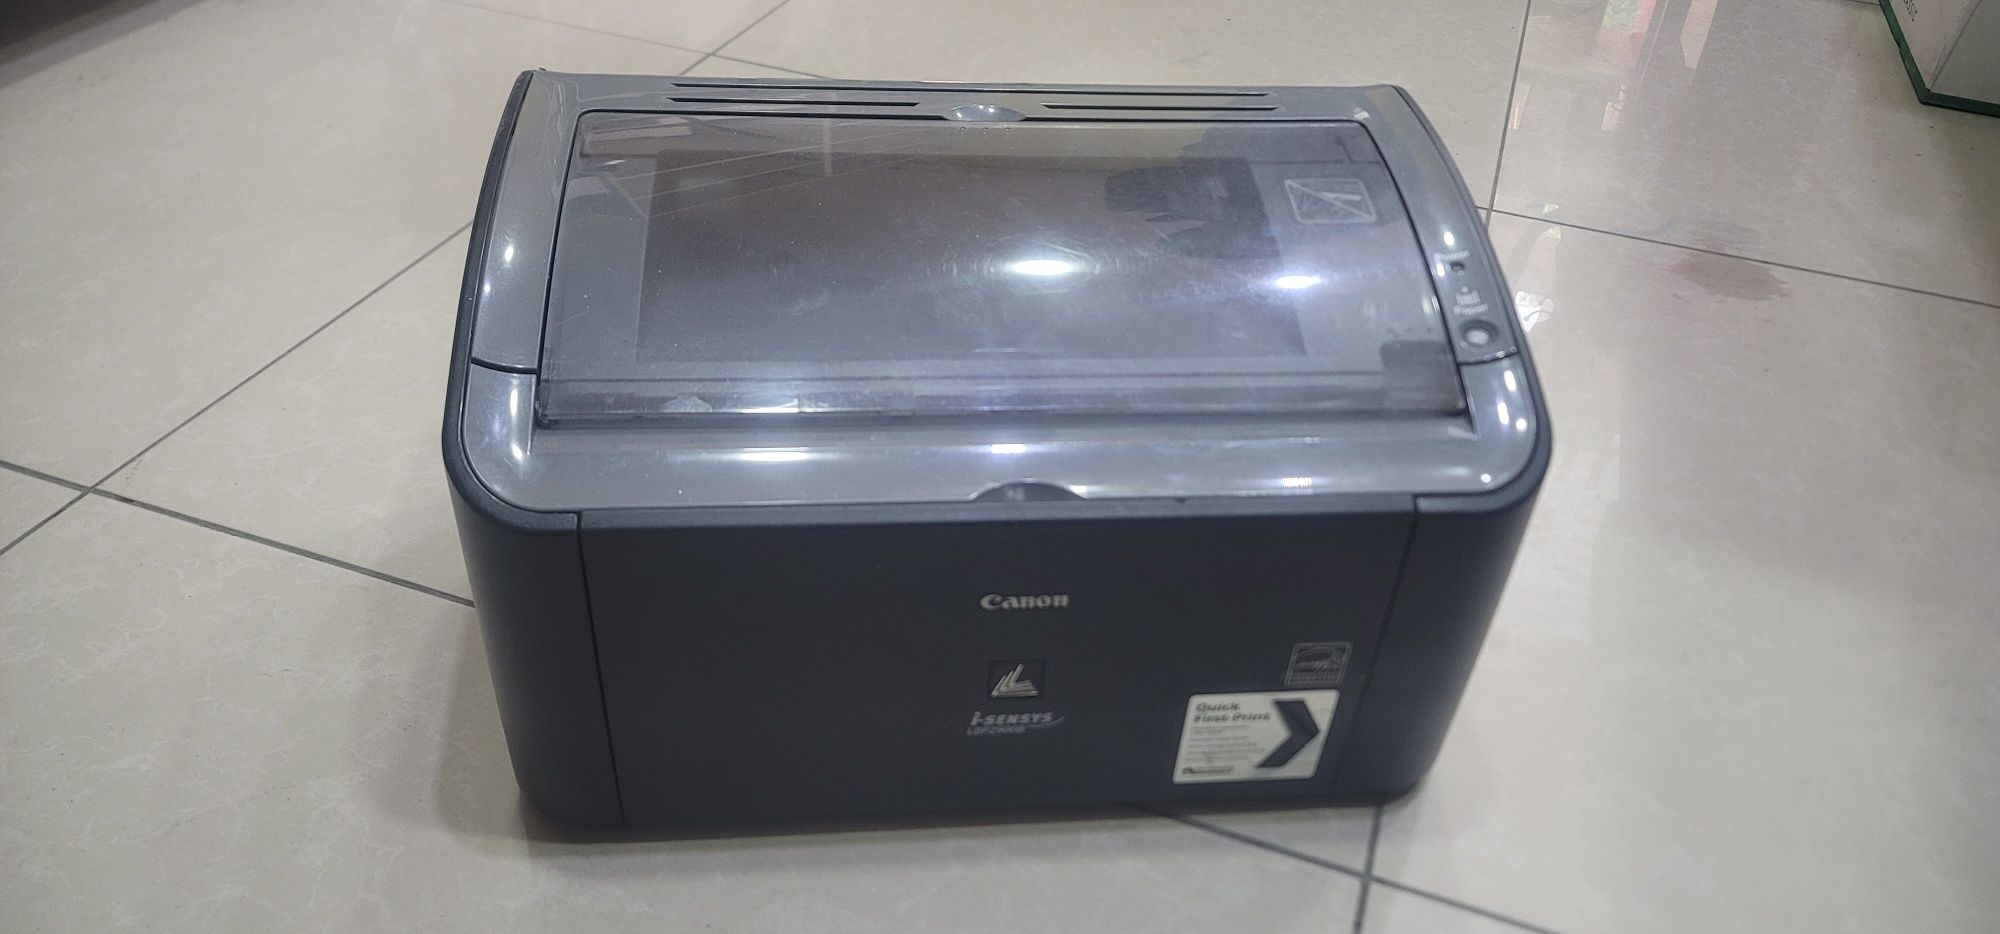 Canon LBP2900 printer